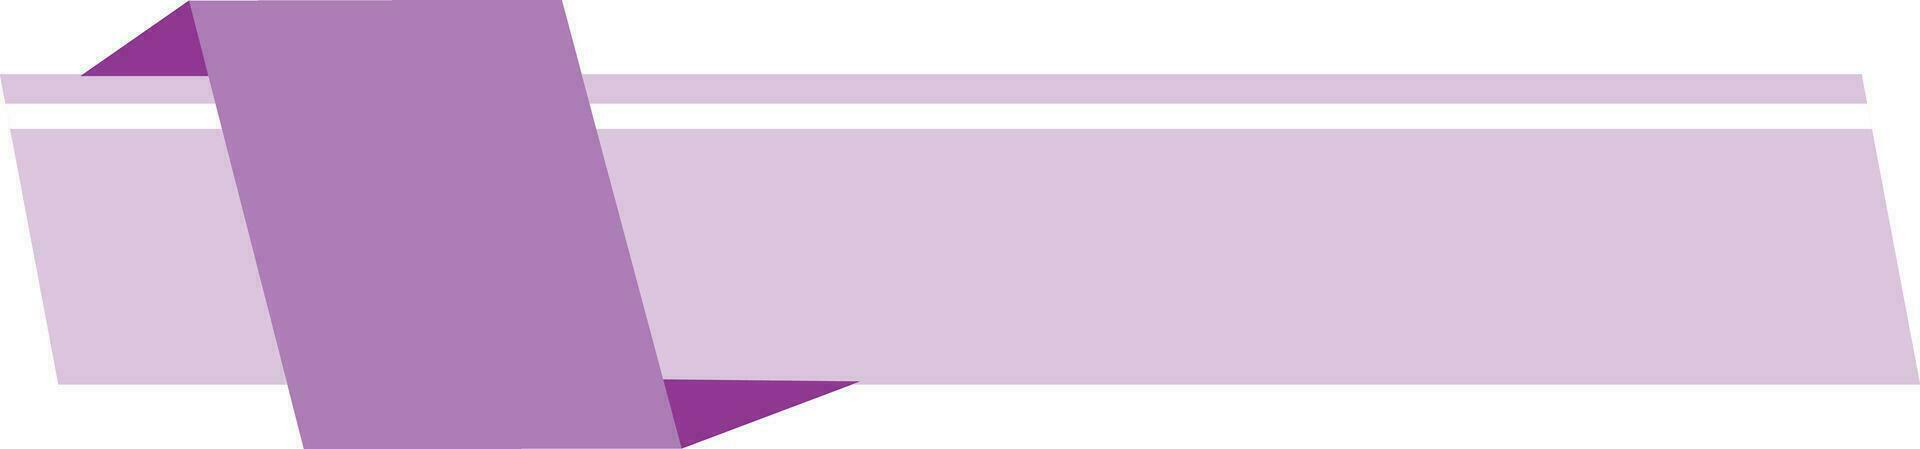 púrpura infografía etiqueta vector